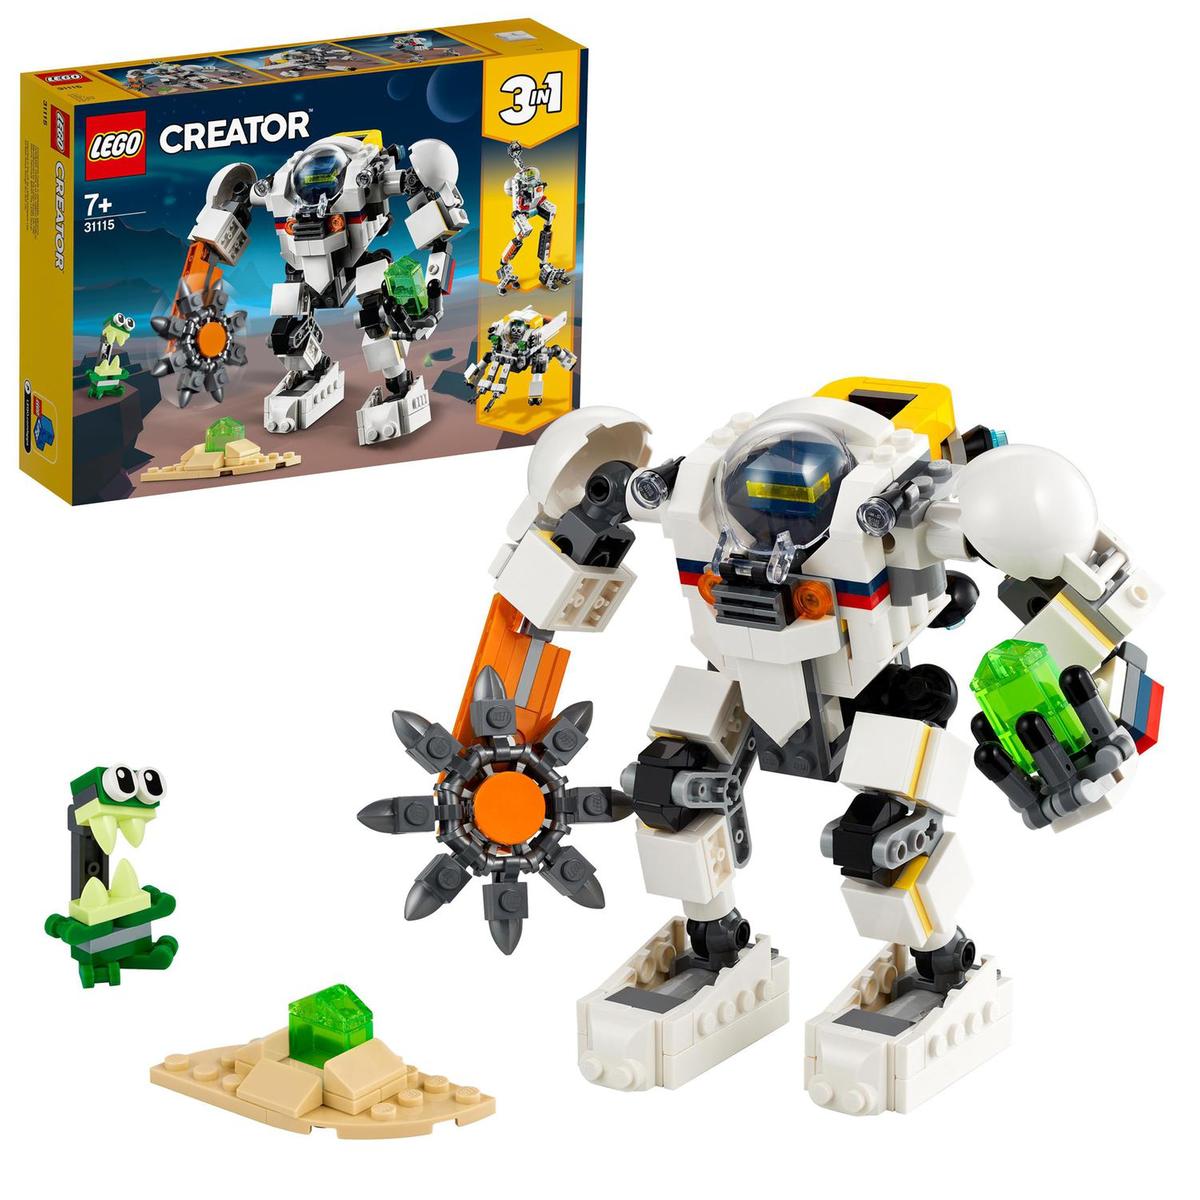 LEGO Creator - Meca minero espacial - 31115, Lego Creator